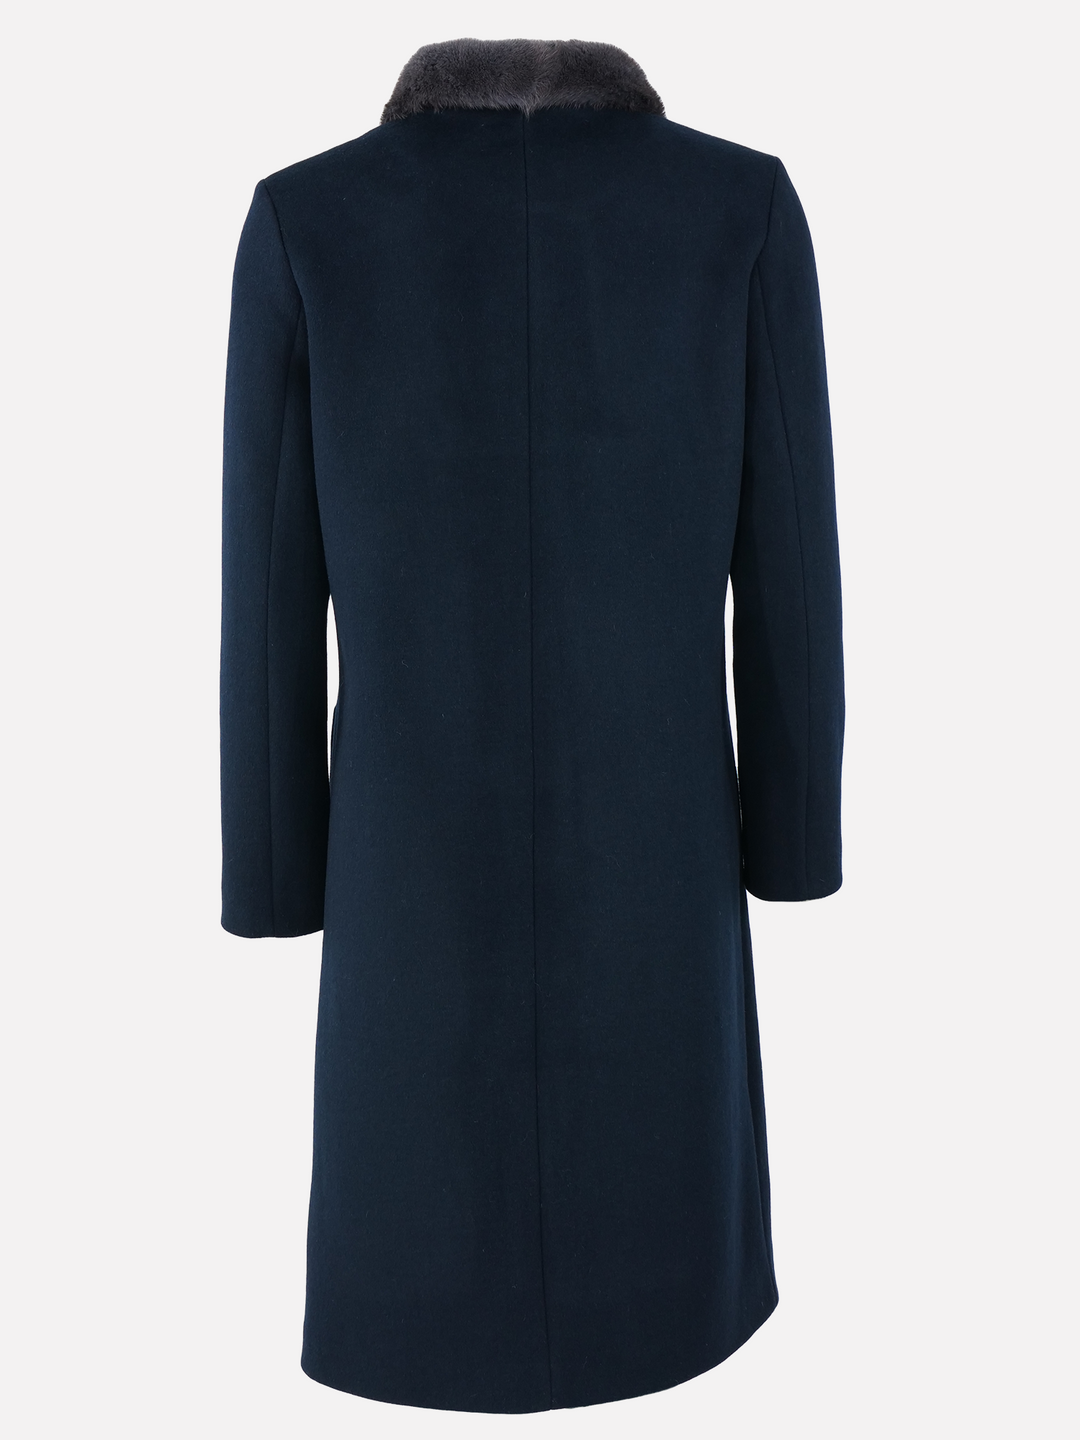 Fava, 105 cm. - Collar - Wool - Women - Blue